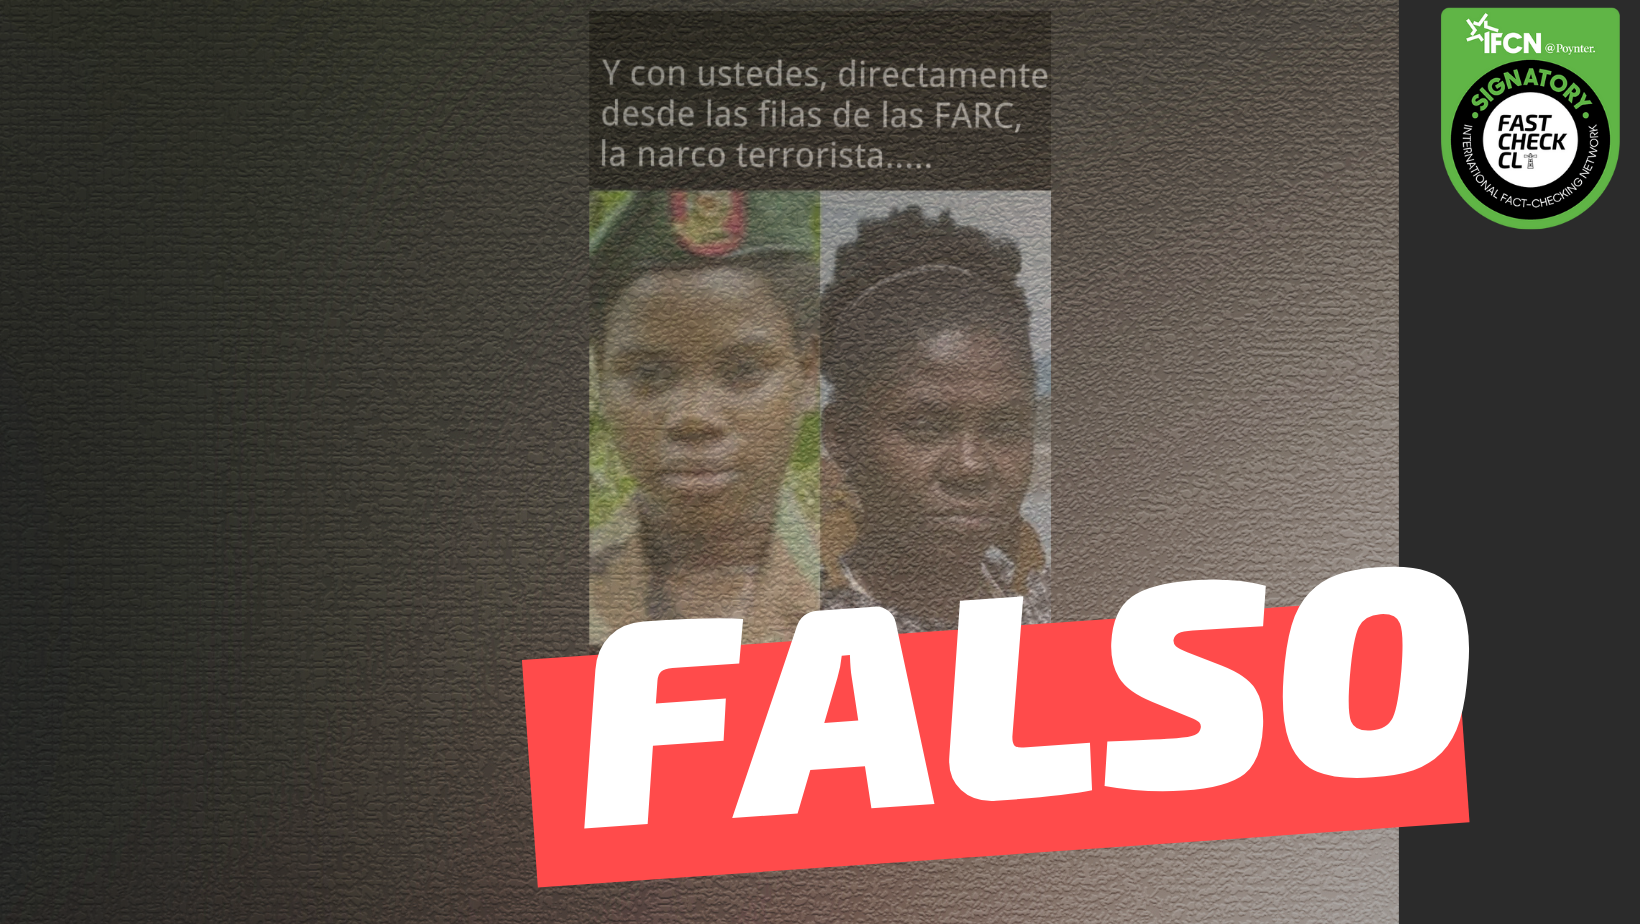 You are currently viewing (Imagen) “Y con ustedes, directamente desde las filas de la FARC, la narco terrorista Francia Márquez”: #Falso